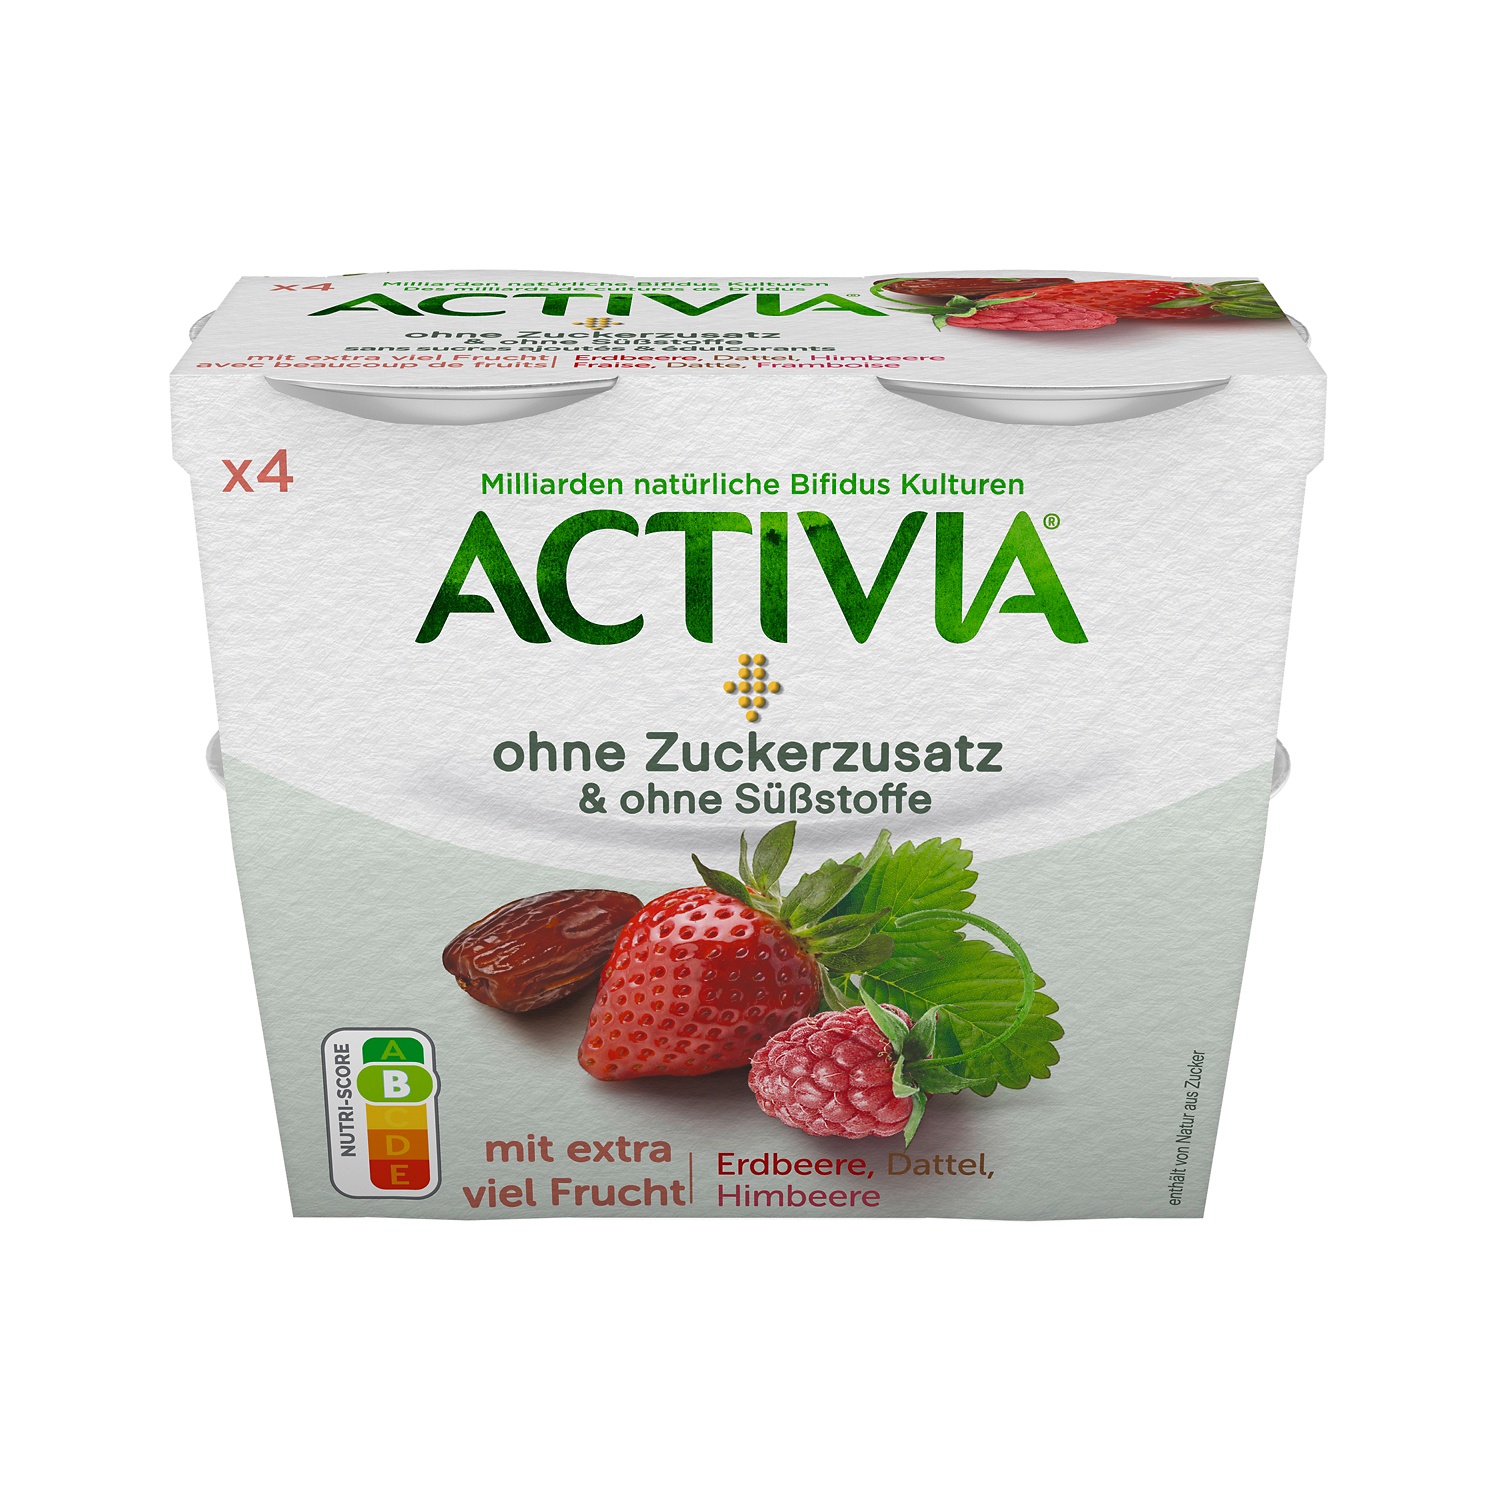 DANONE Activia ohne Zucker, Erdbeer/Datteln/Himbeer